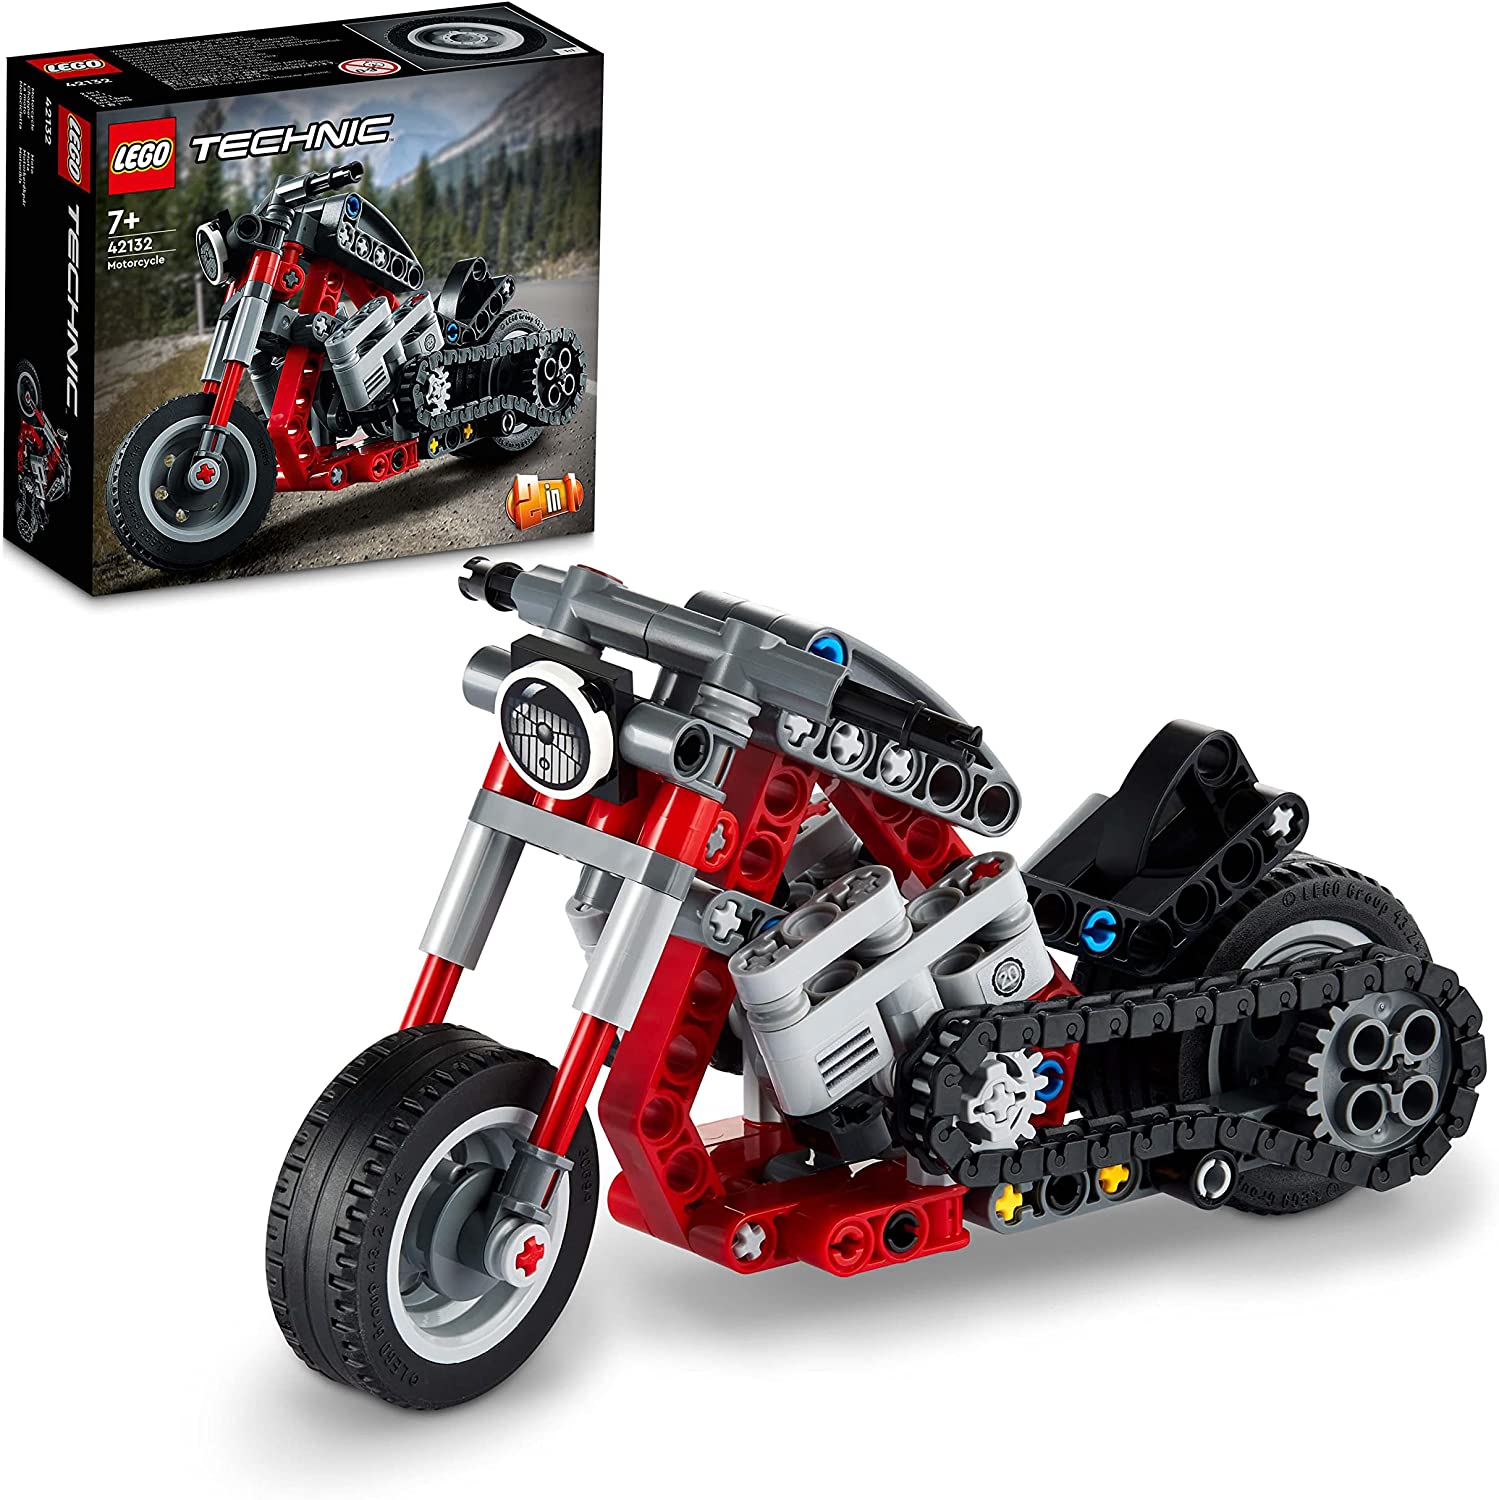 LEGO 42132 Technic Chopper Abenteuer-Bike, 2-in-1 Bausatz, Motorrad-Spielze